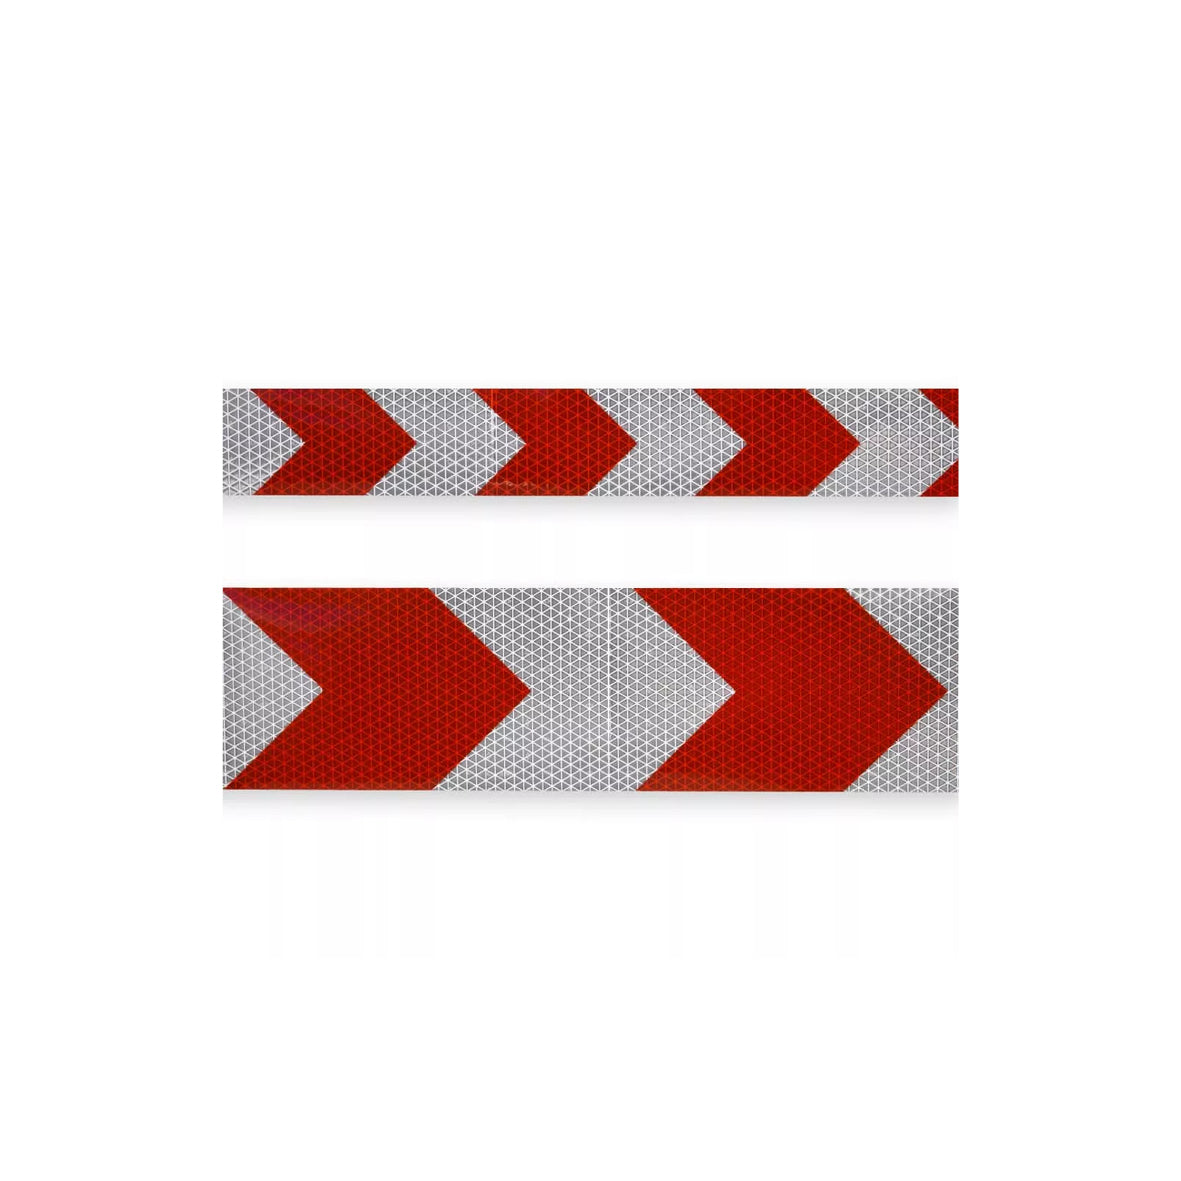 Warnmarkierungsband Chevron R2, für Fahrzeuge, R2, rot-weiss, 1.25 m x 100 mm